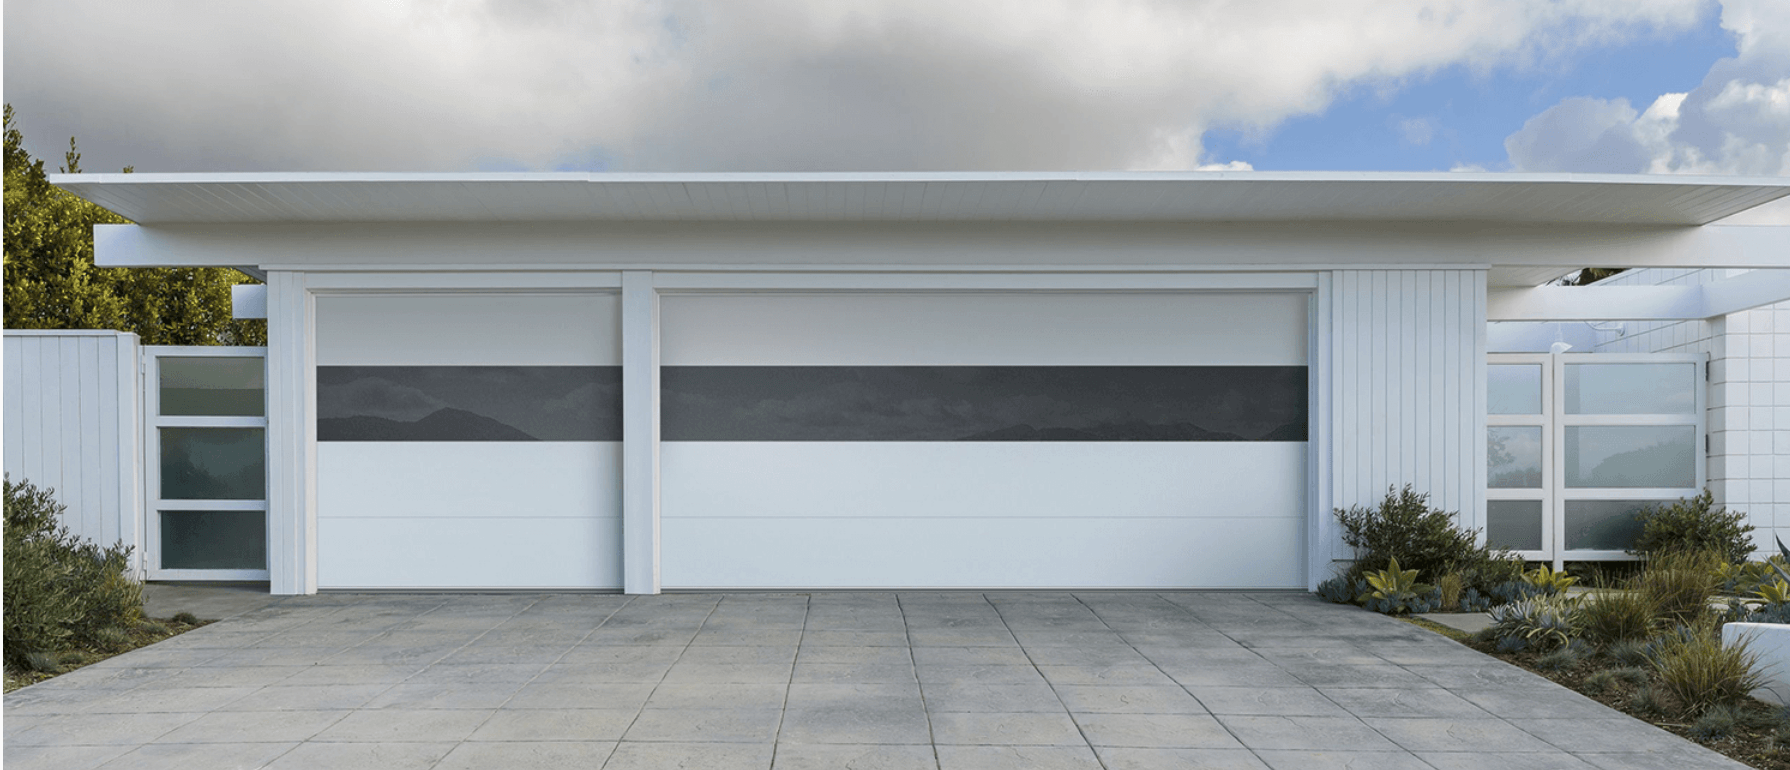 Garage Door Victor Garage Door Find The Best For 2021